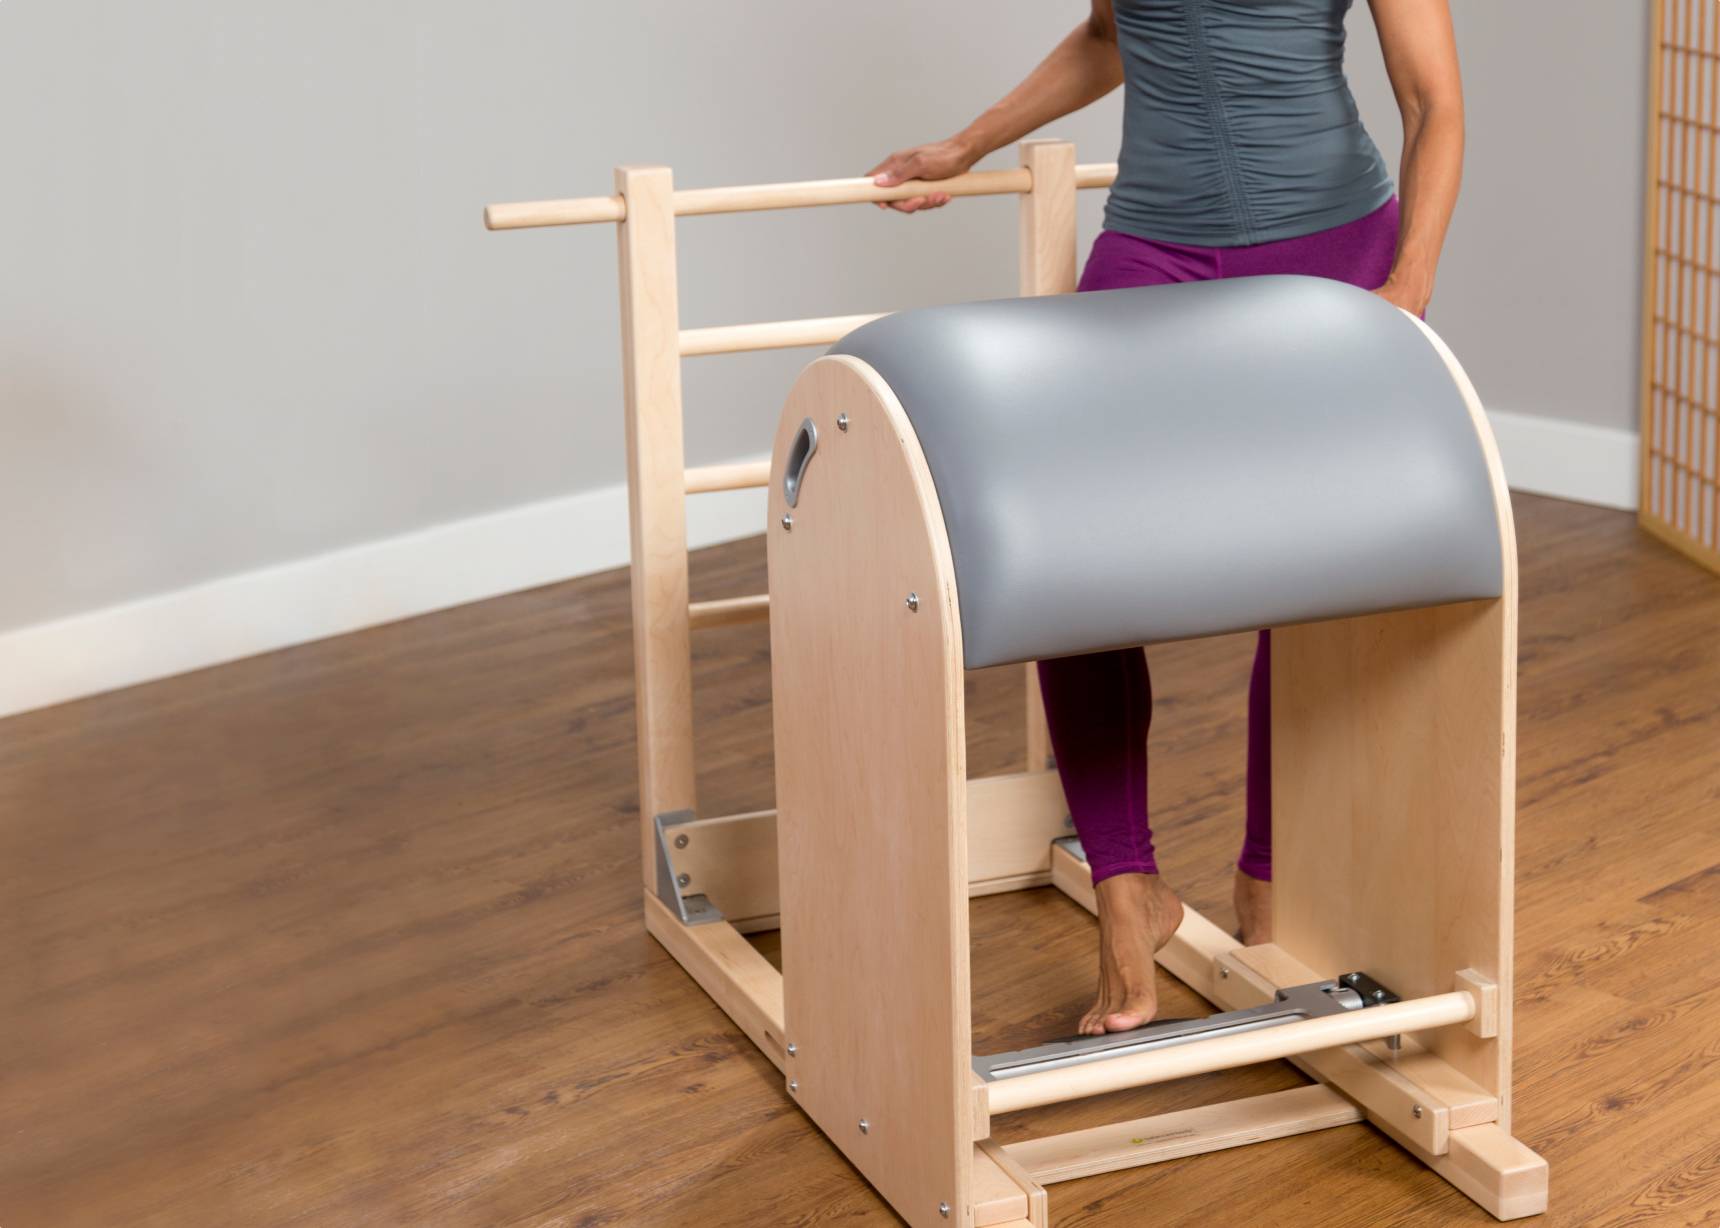 Ladder Barrel Merrithew adjustable with steps for pilates